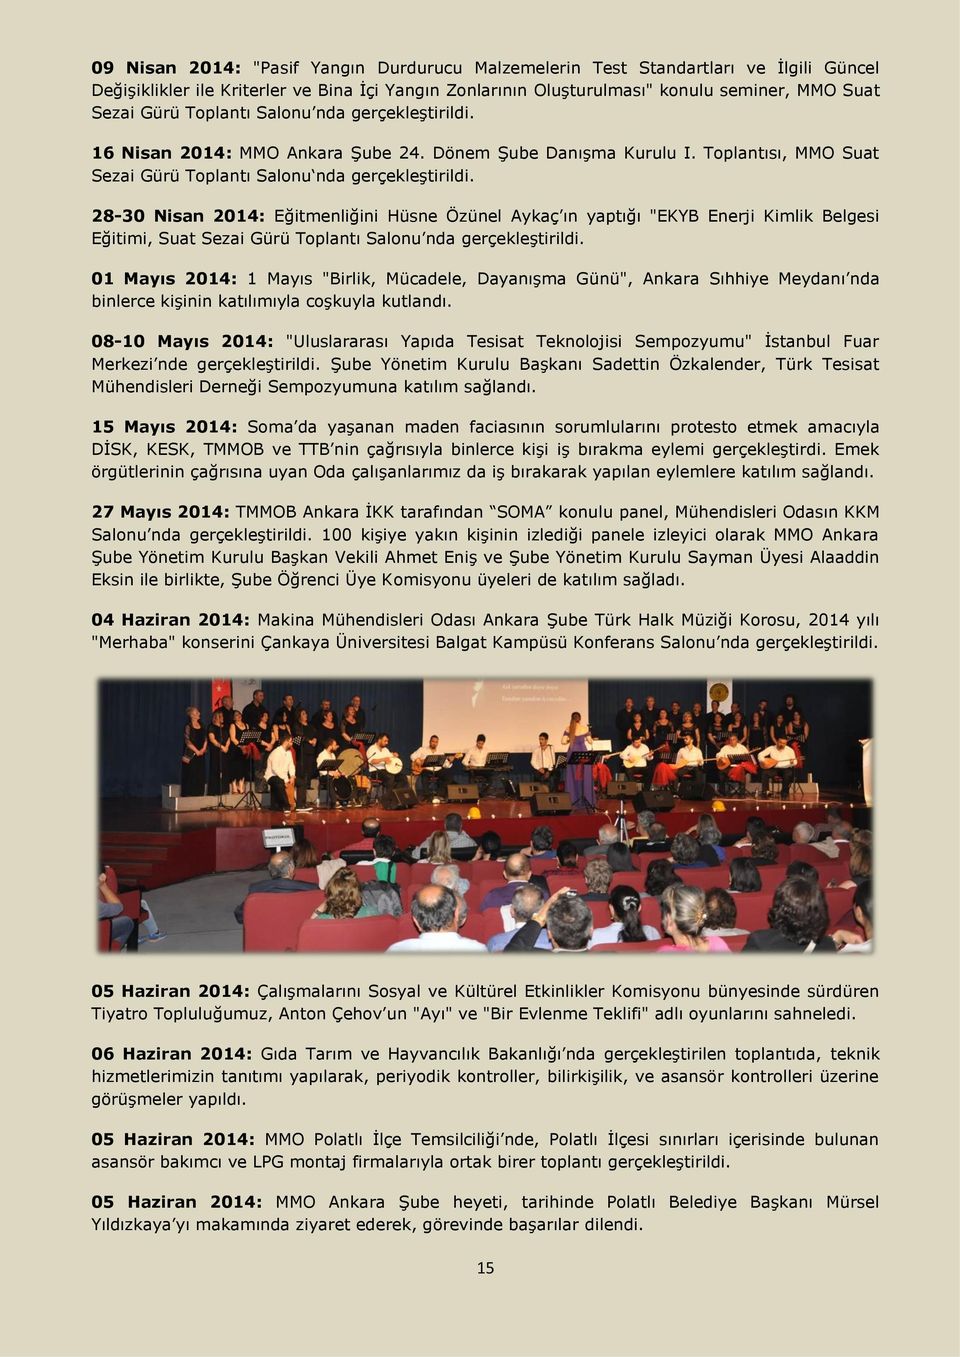 28-30 Nisan 2014: Eğitmenliğini Hüsne Özünel Aykaç ın yaptığı "EKYB Enerji Kimlik Belgesi Eğitimi, Suat Sezai Gürü Toplantı Salonu nda gerçekleştirildi.